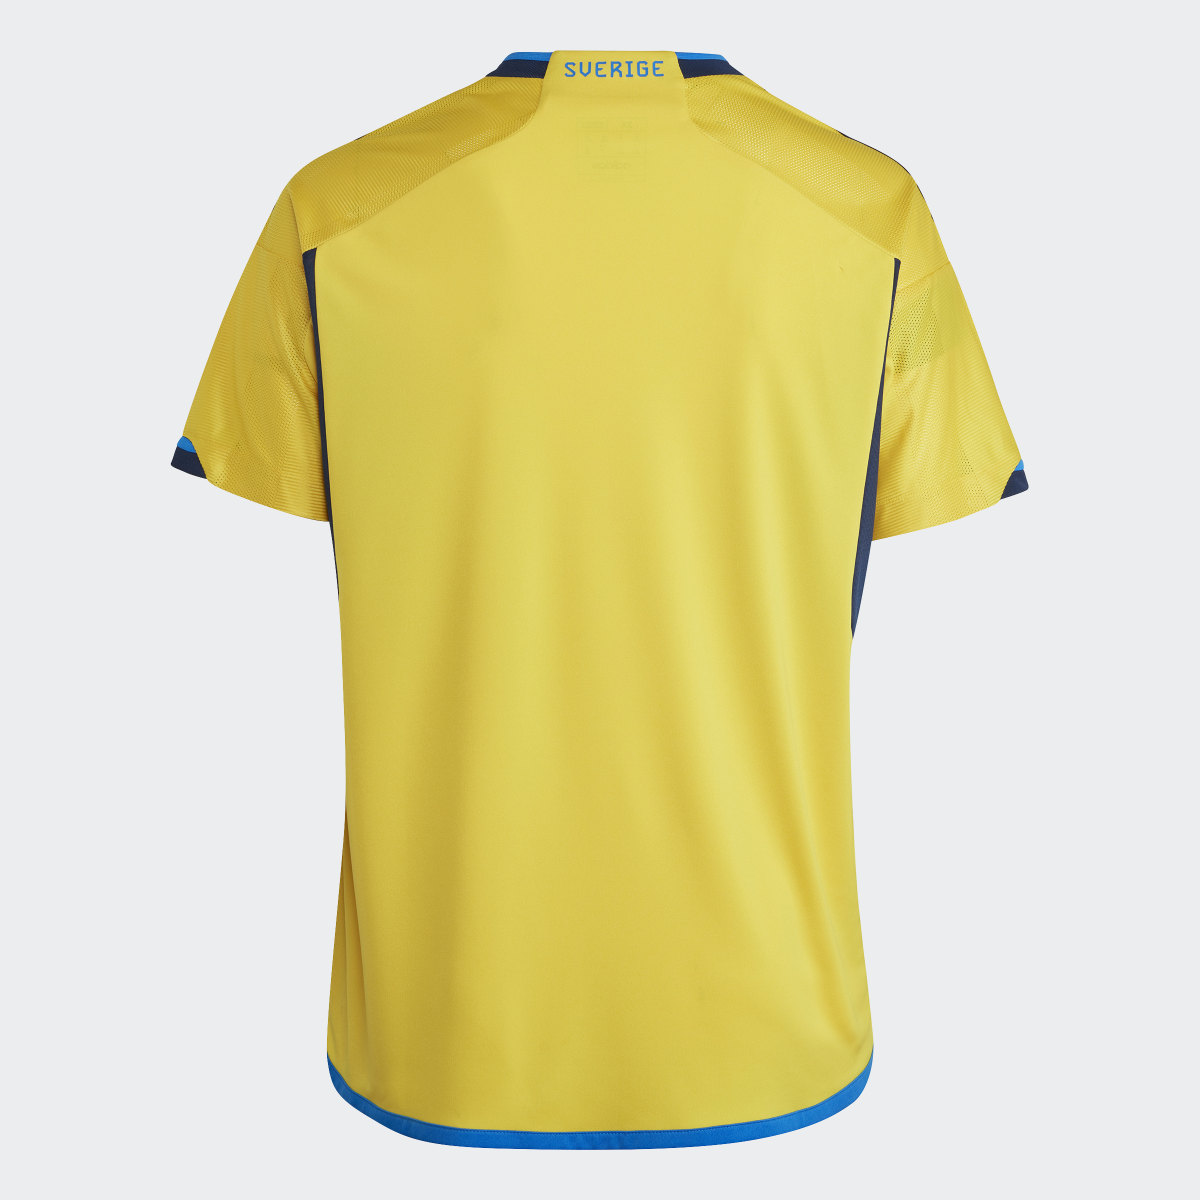 Adidas Camiseta primera equipación Suecia 22 (Tallas grandes). 6